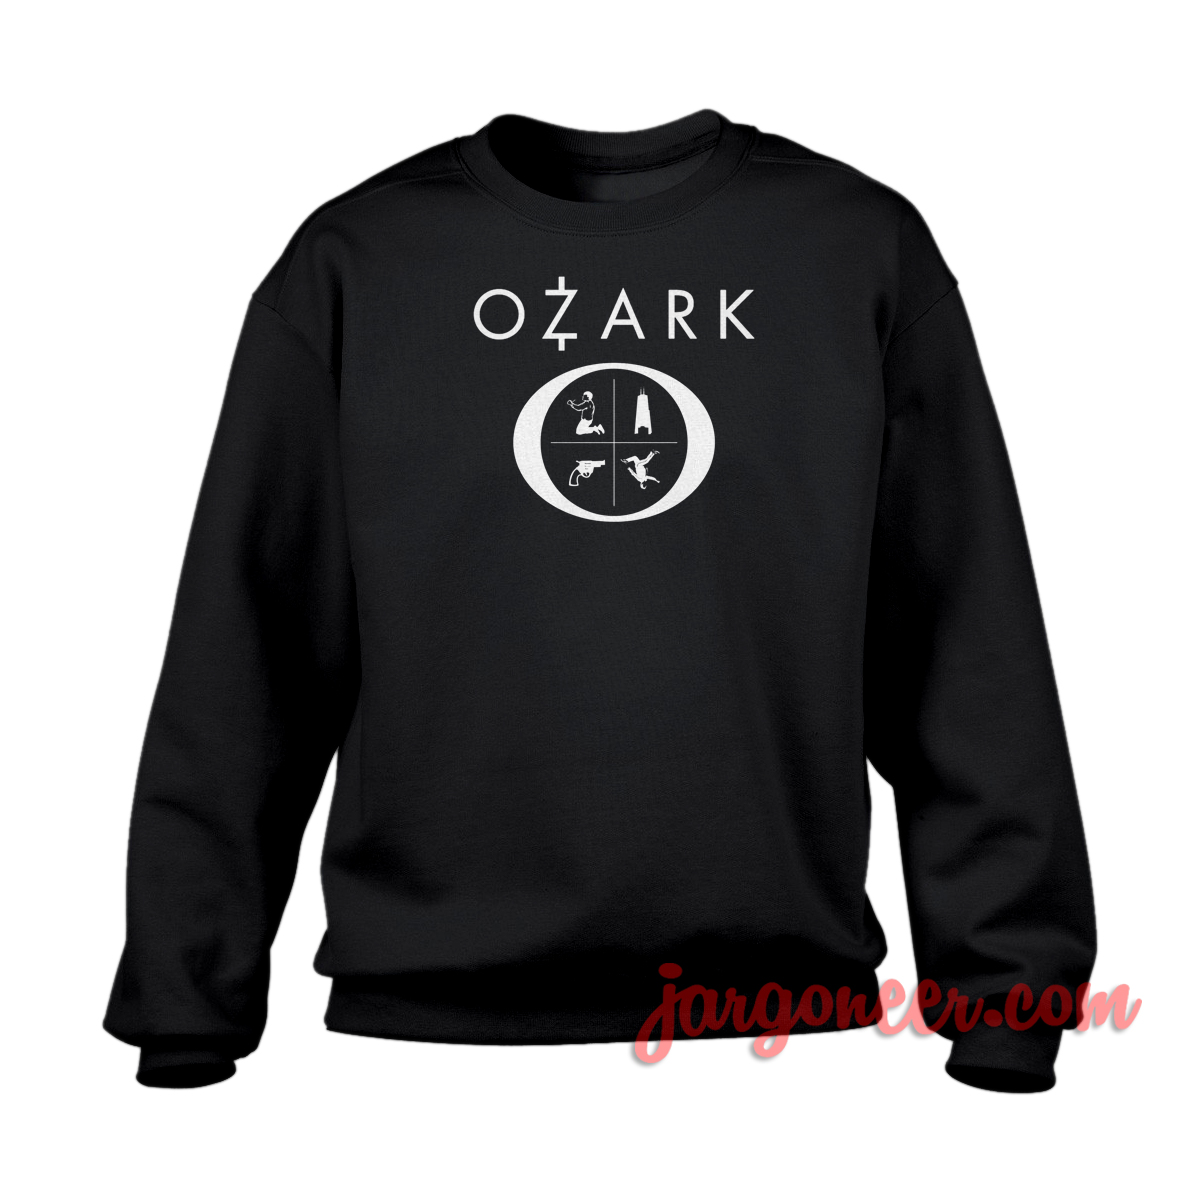 Ozark Series 1 - Shop Unique Graphic Cool Shirt Designs